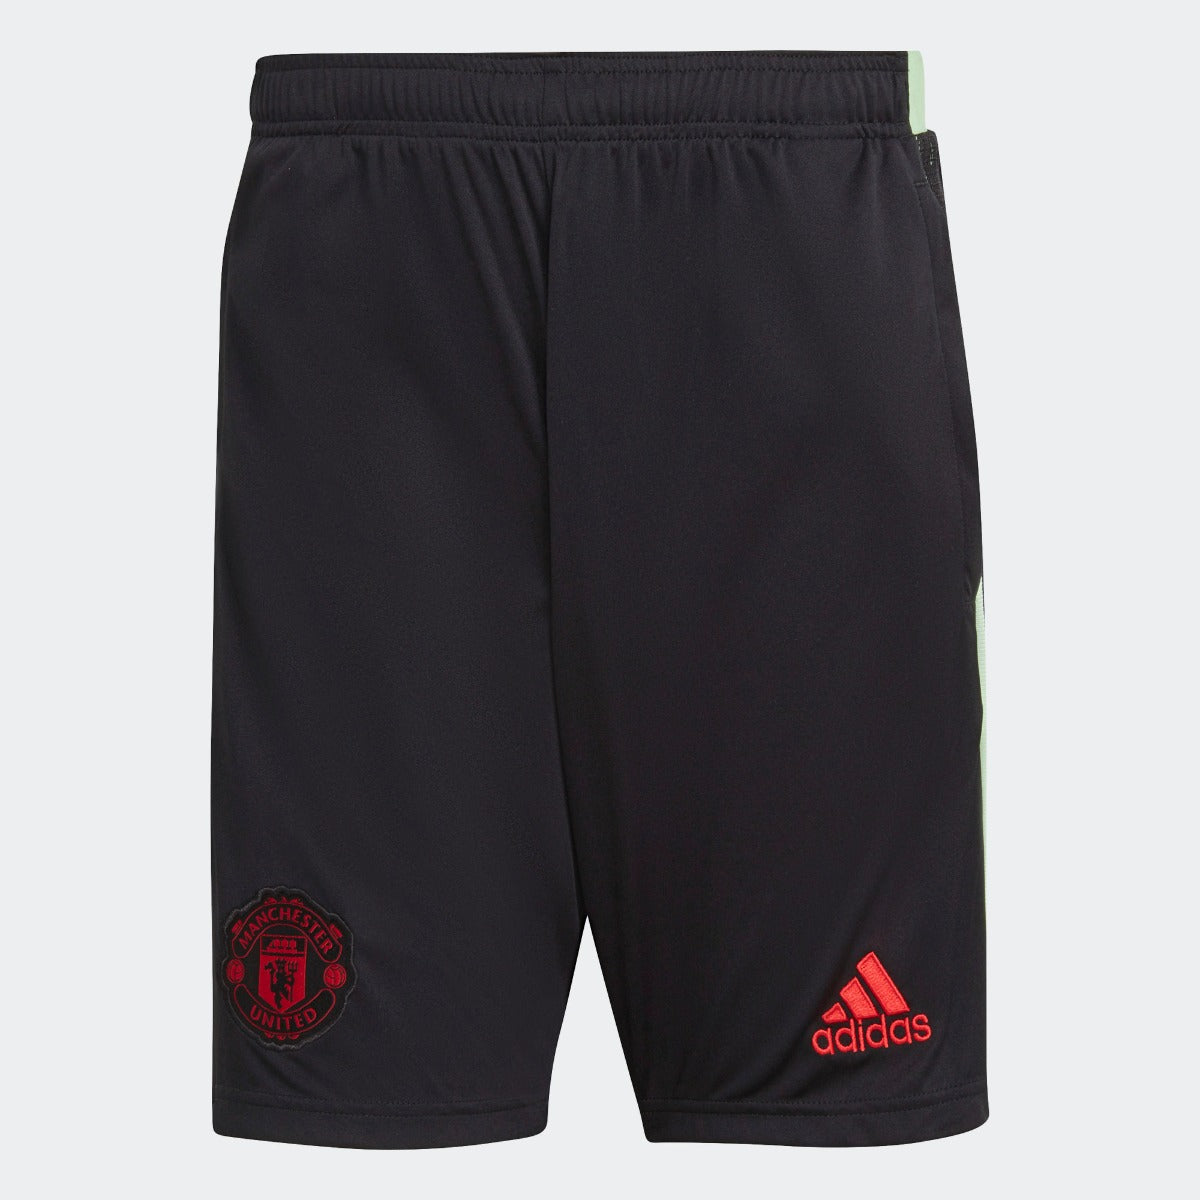 Adidas, Adidas 2021 Pantaloncini da allenamento del Manchester United - Nero